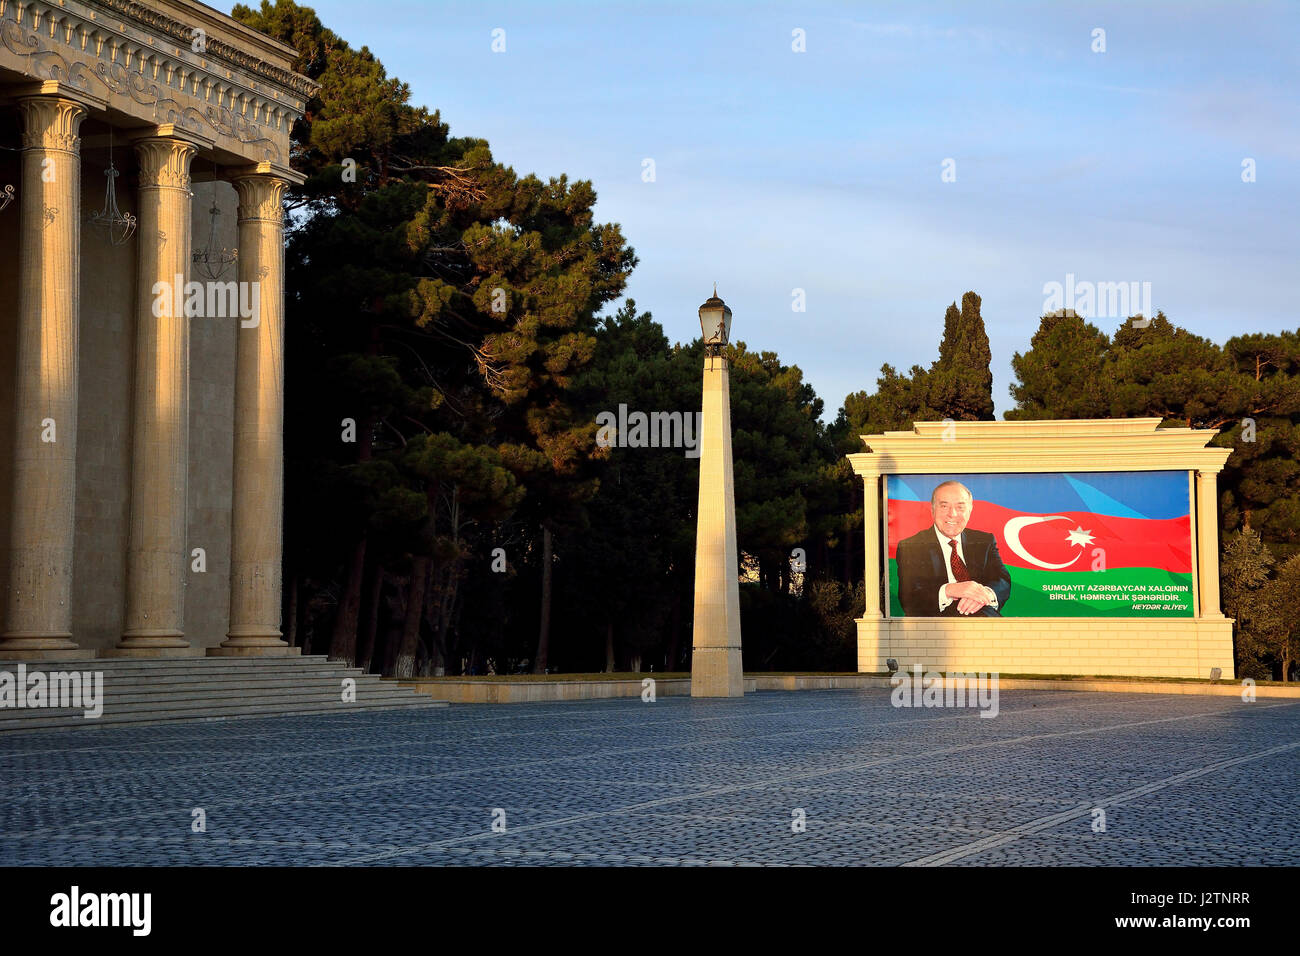 Heydar Aliyev en frente de la bandera de Azerbaiyán en un póster. Fotografía del ex Presidente de Azerbaiyán muestra en la Plaza de la ciudad, en el norte de la ciudad de Baku Foto de stock